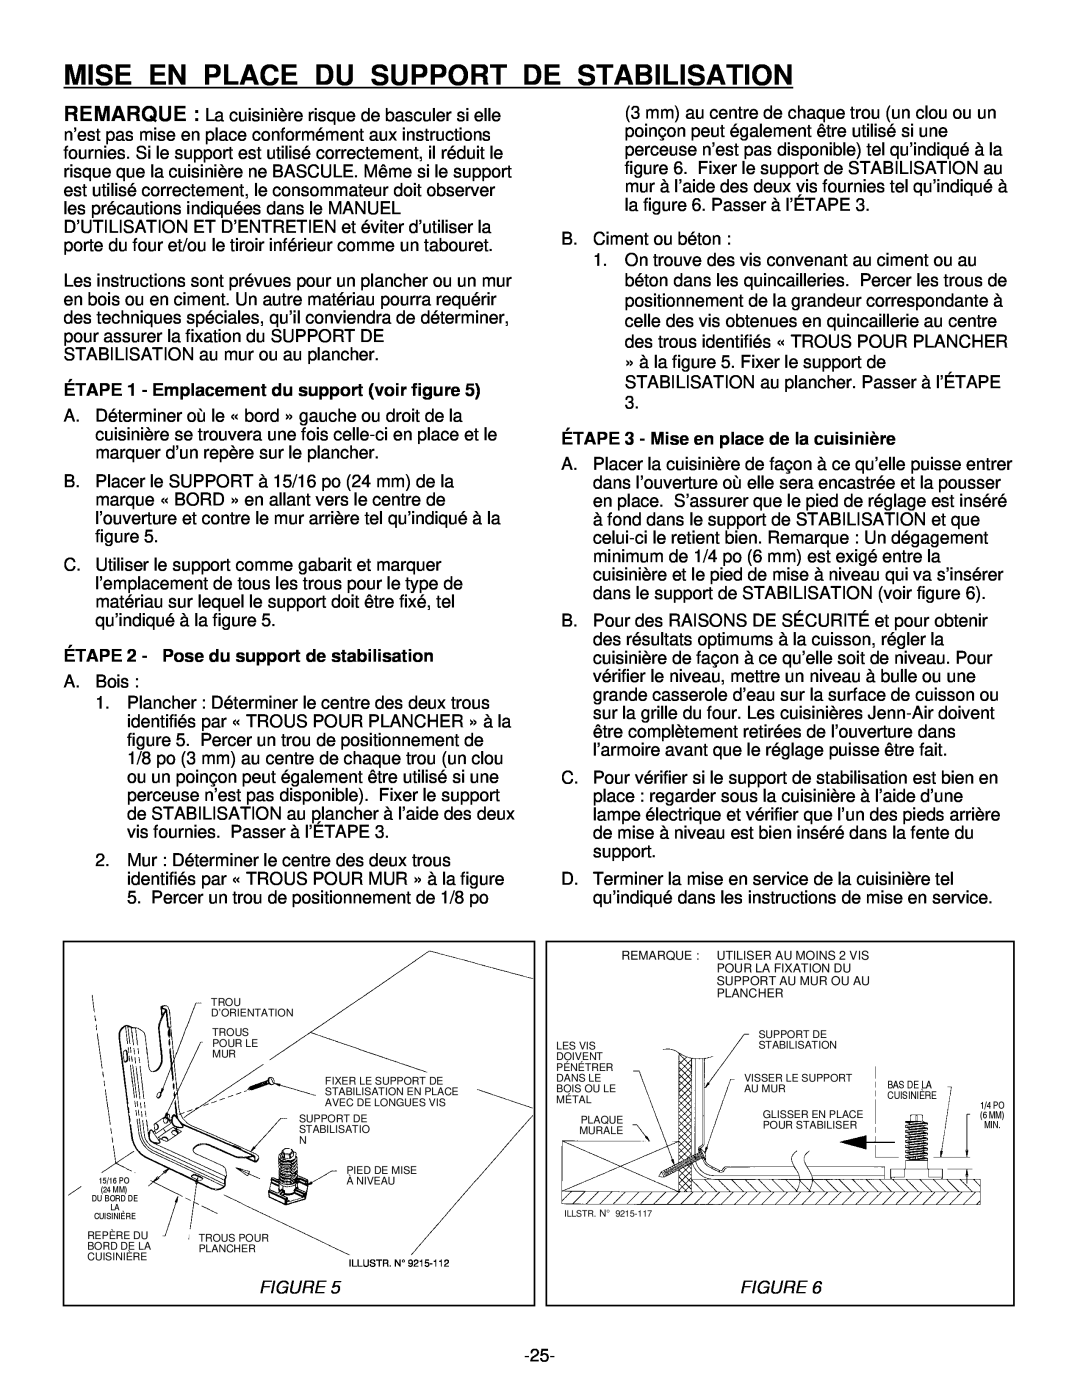 Jenn-Air Range installation manual Mise En Place Du Support De Stabilisation, ÉTAPE 1 - Emplacement du support voir figure 